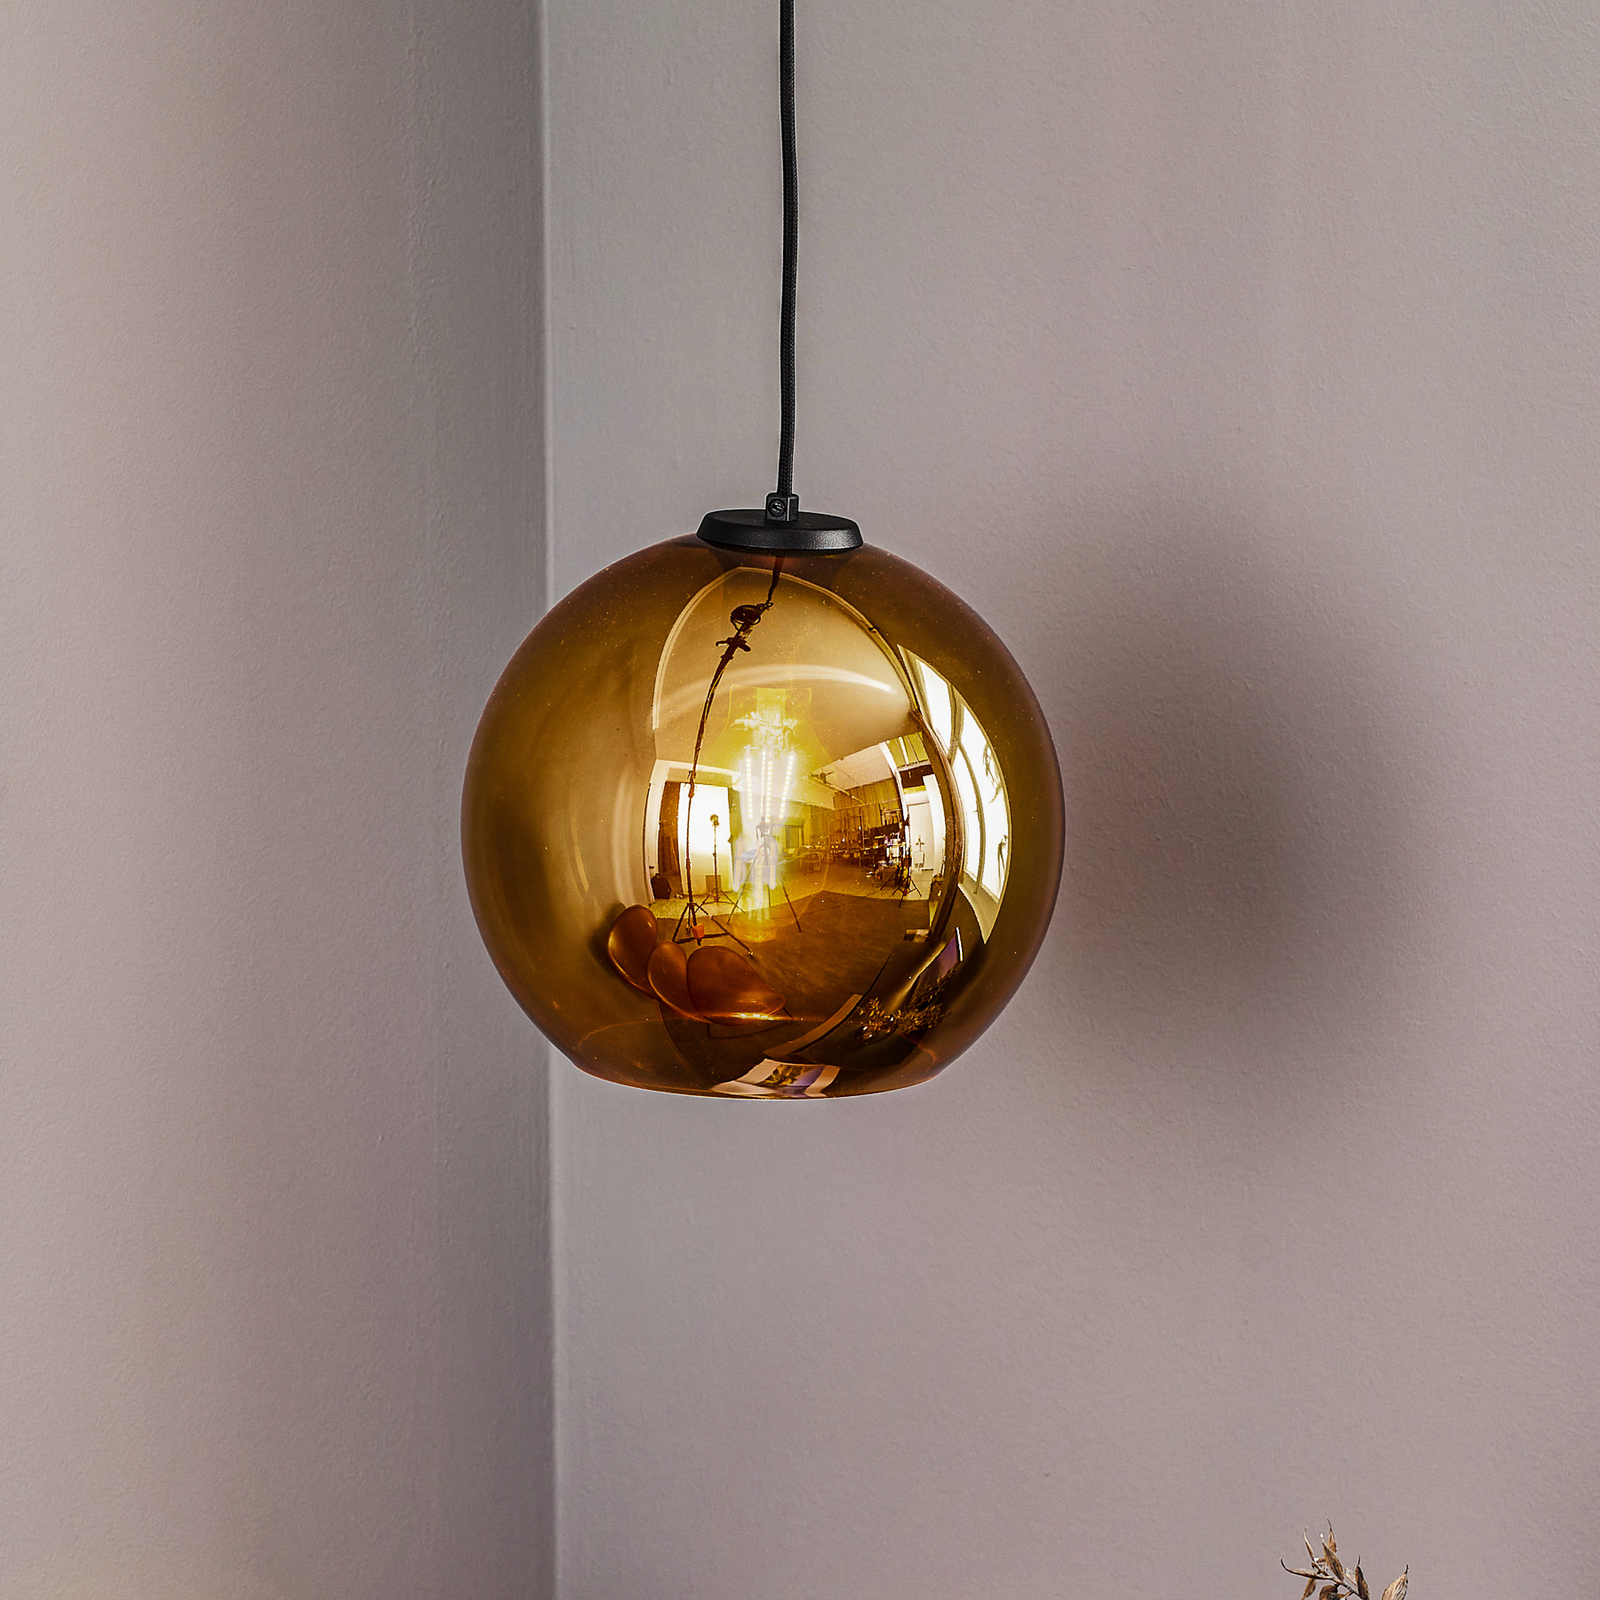 lekkage lippen Verfrissend Hanglamp Polaris, gespiegeld glas, goud | Lampen24.nl